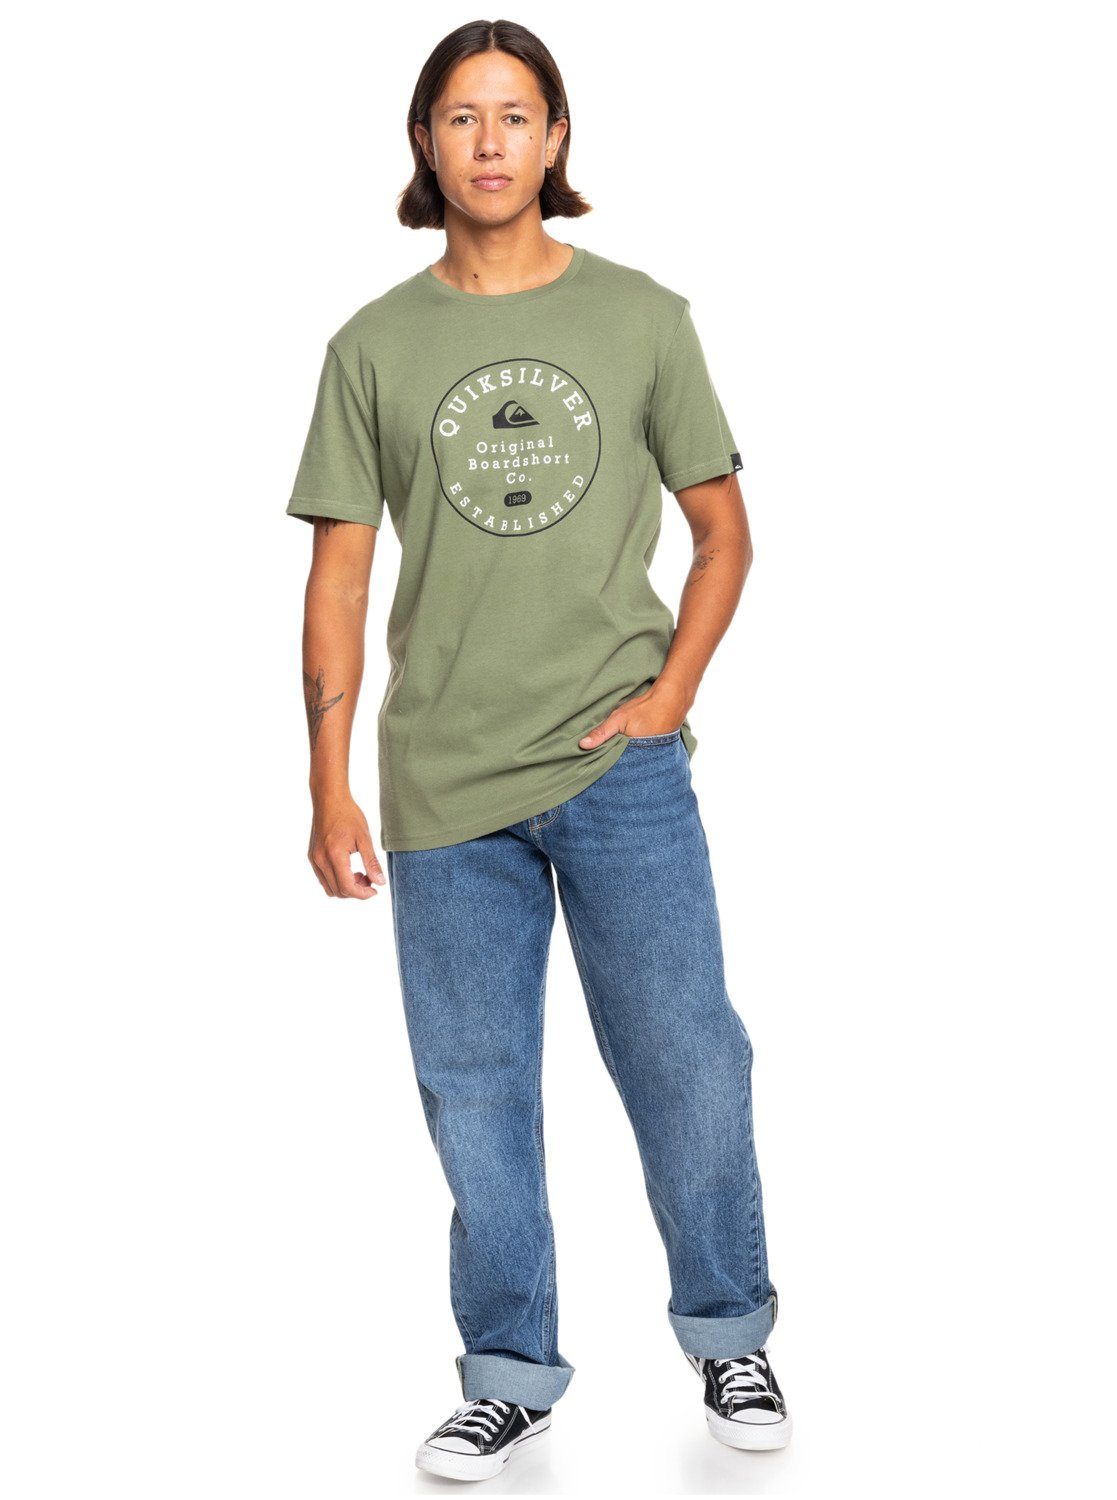 Trim Four Circle Quiksilver Clover Leaf T-Shirt